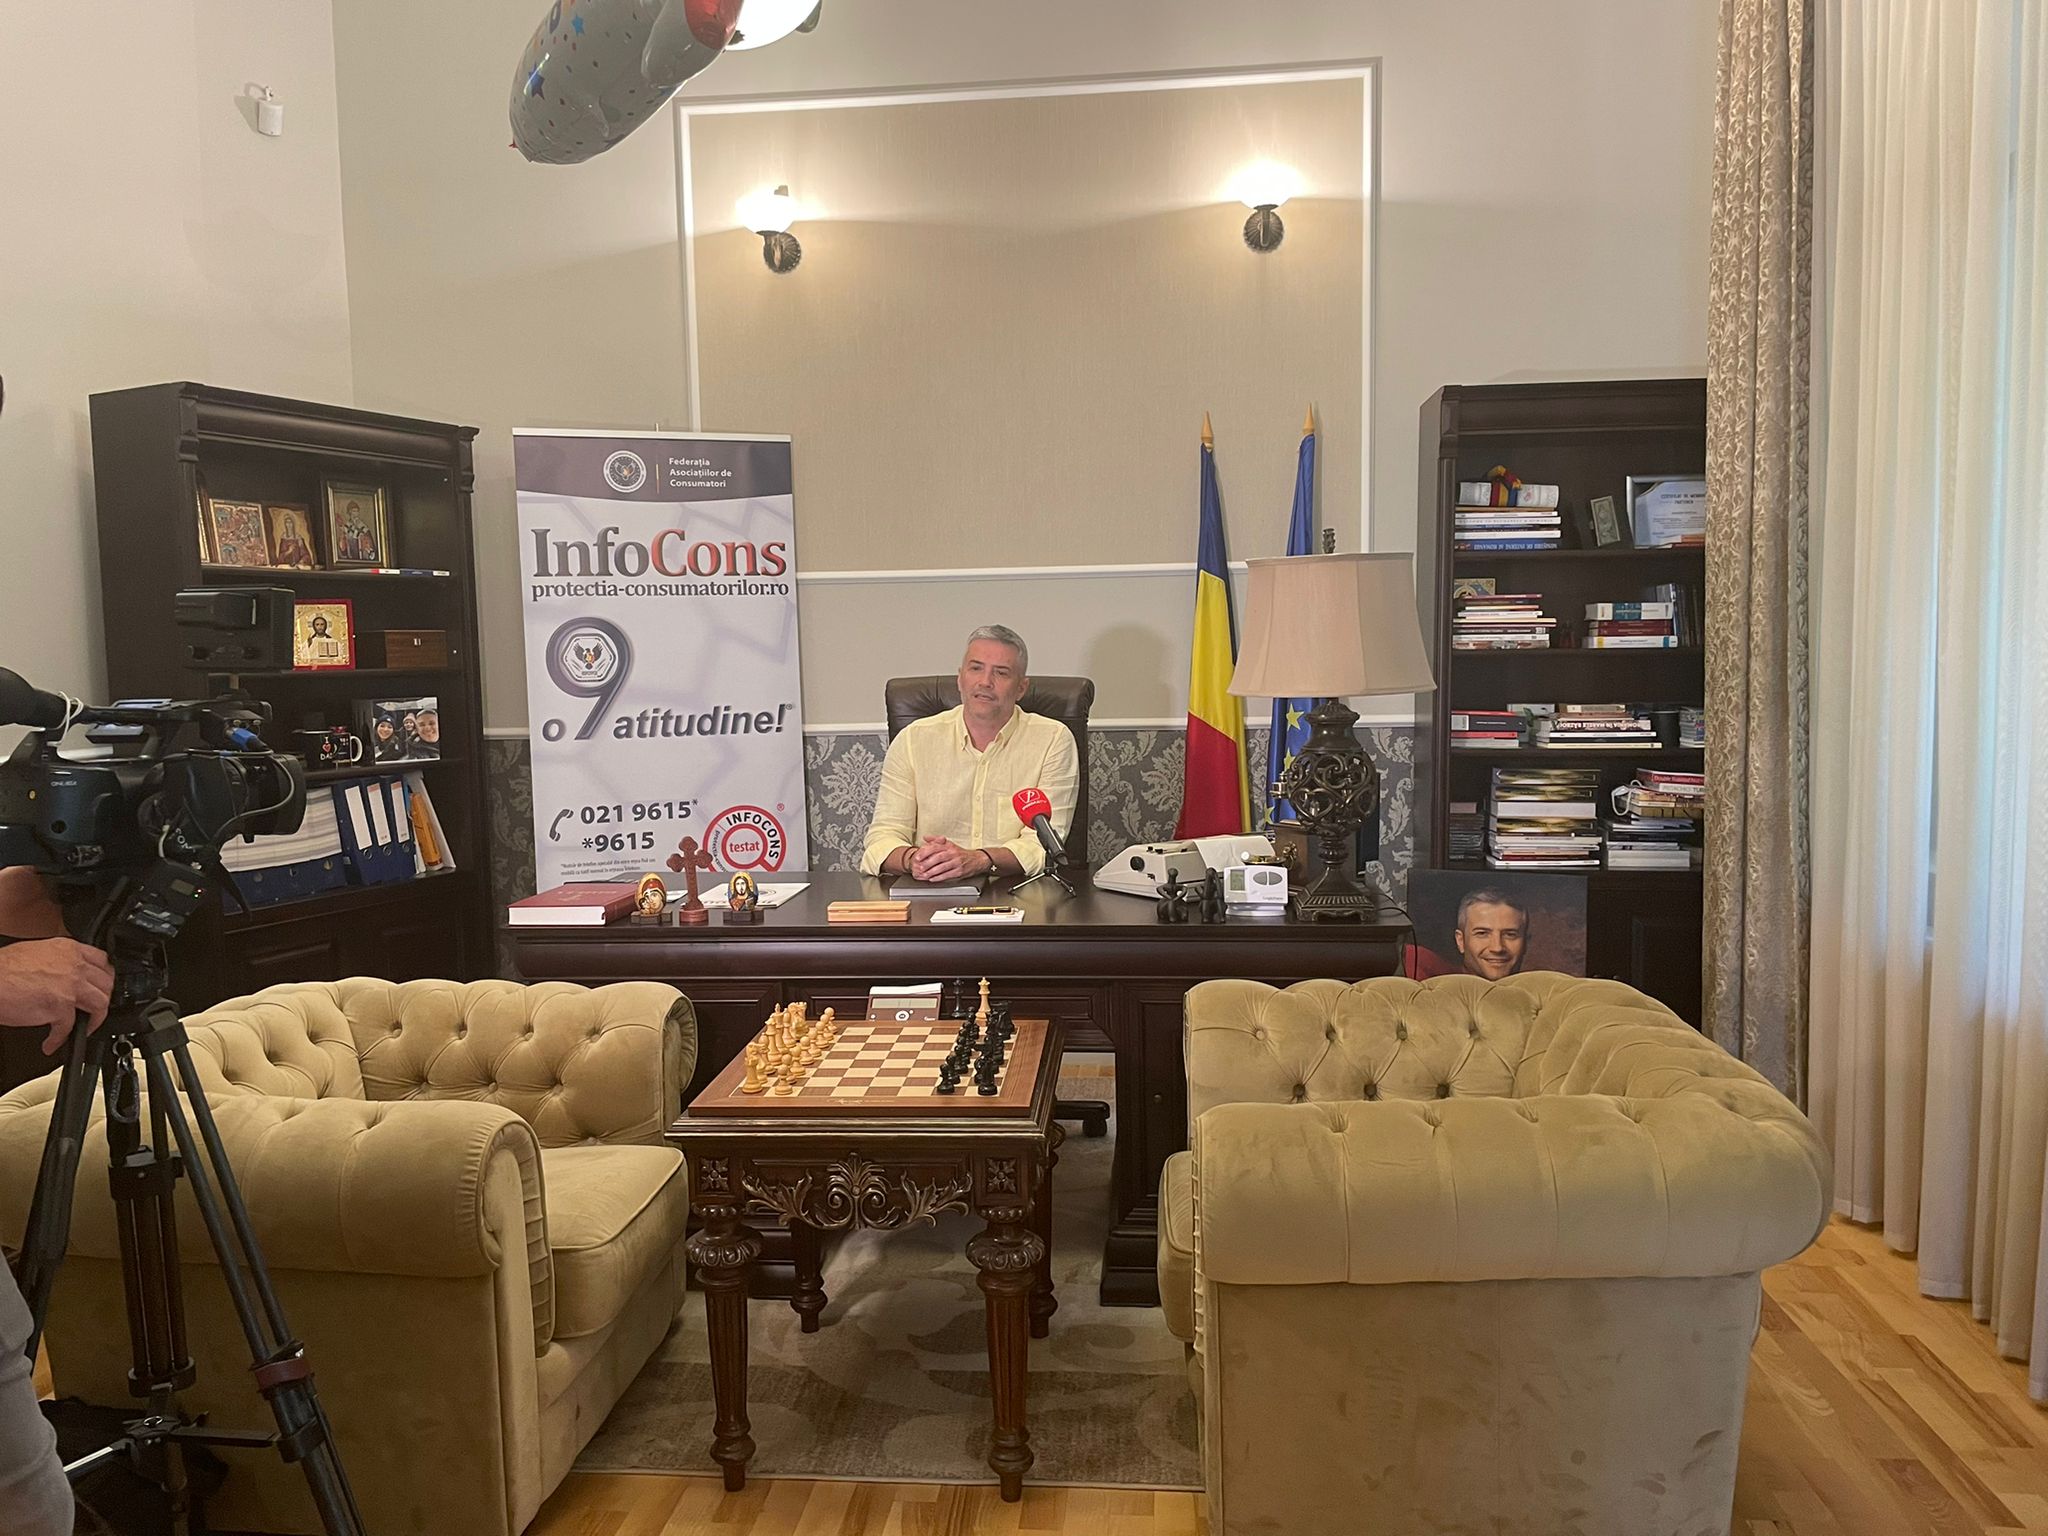 Președintele InfoCons, Sorin Mierlea, interviu pentru Prima TV